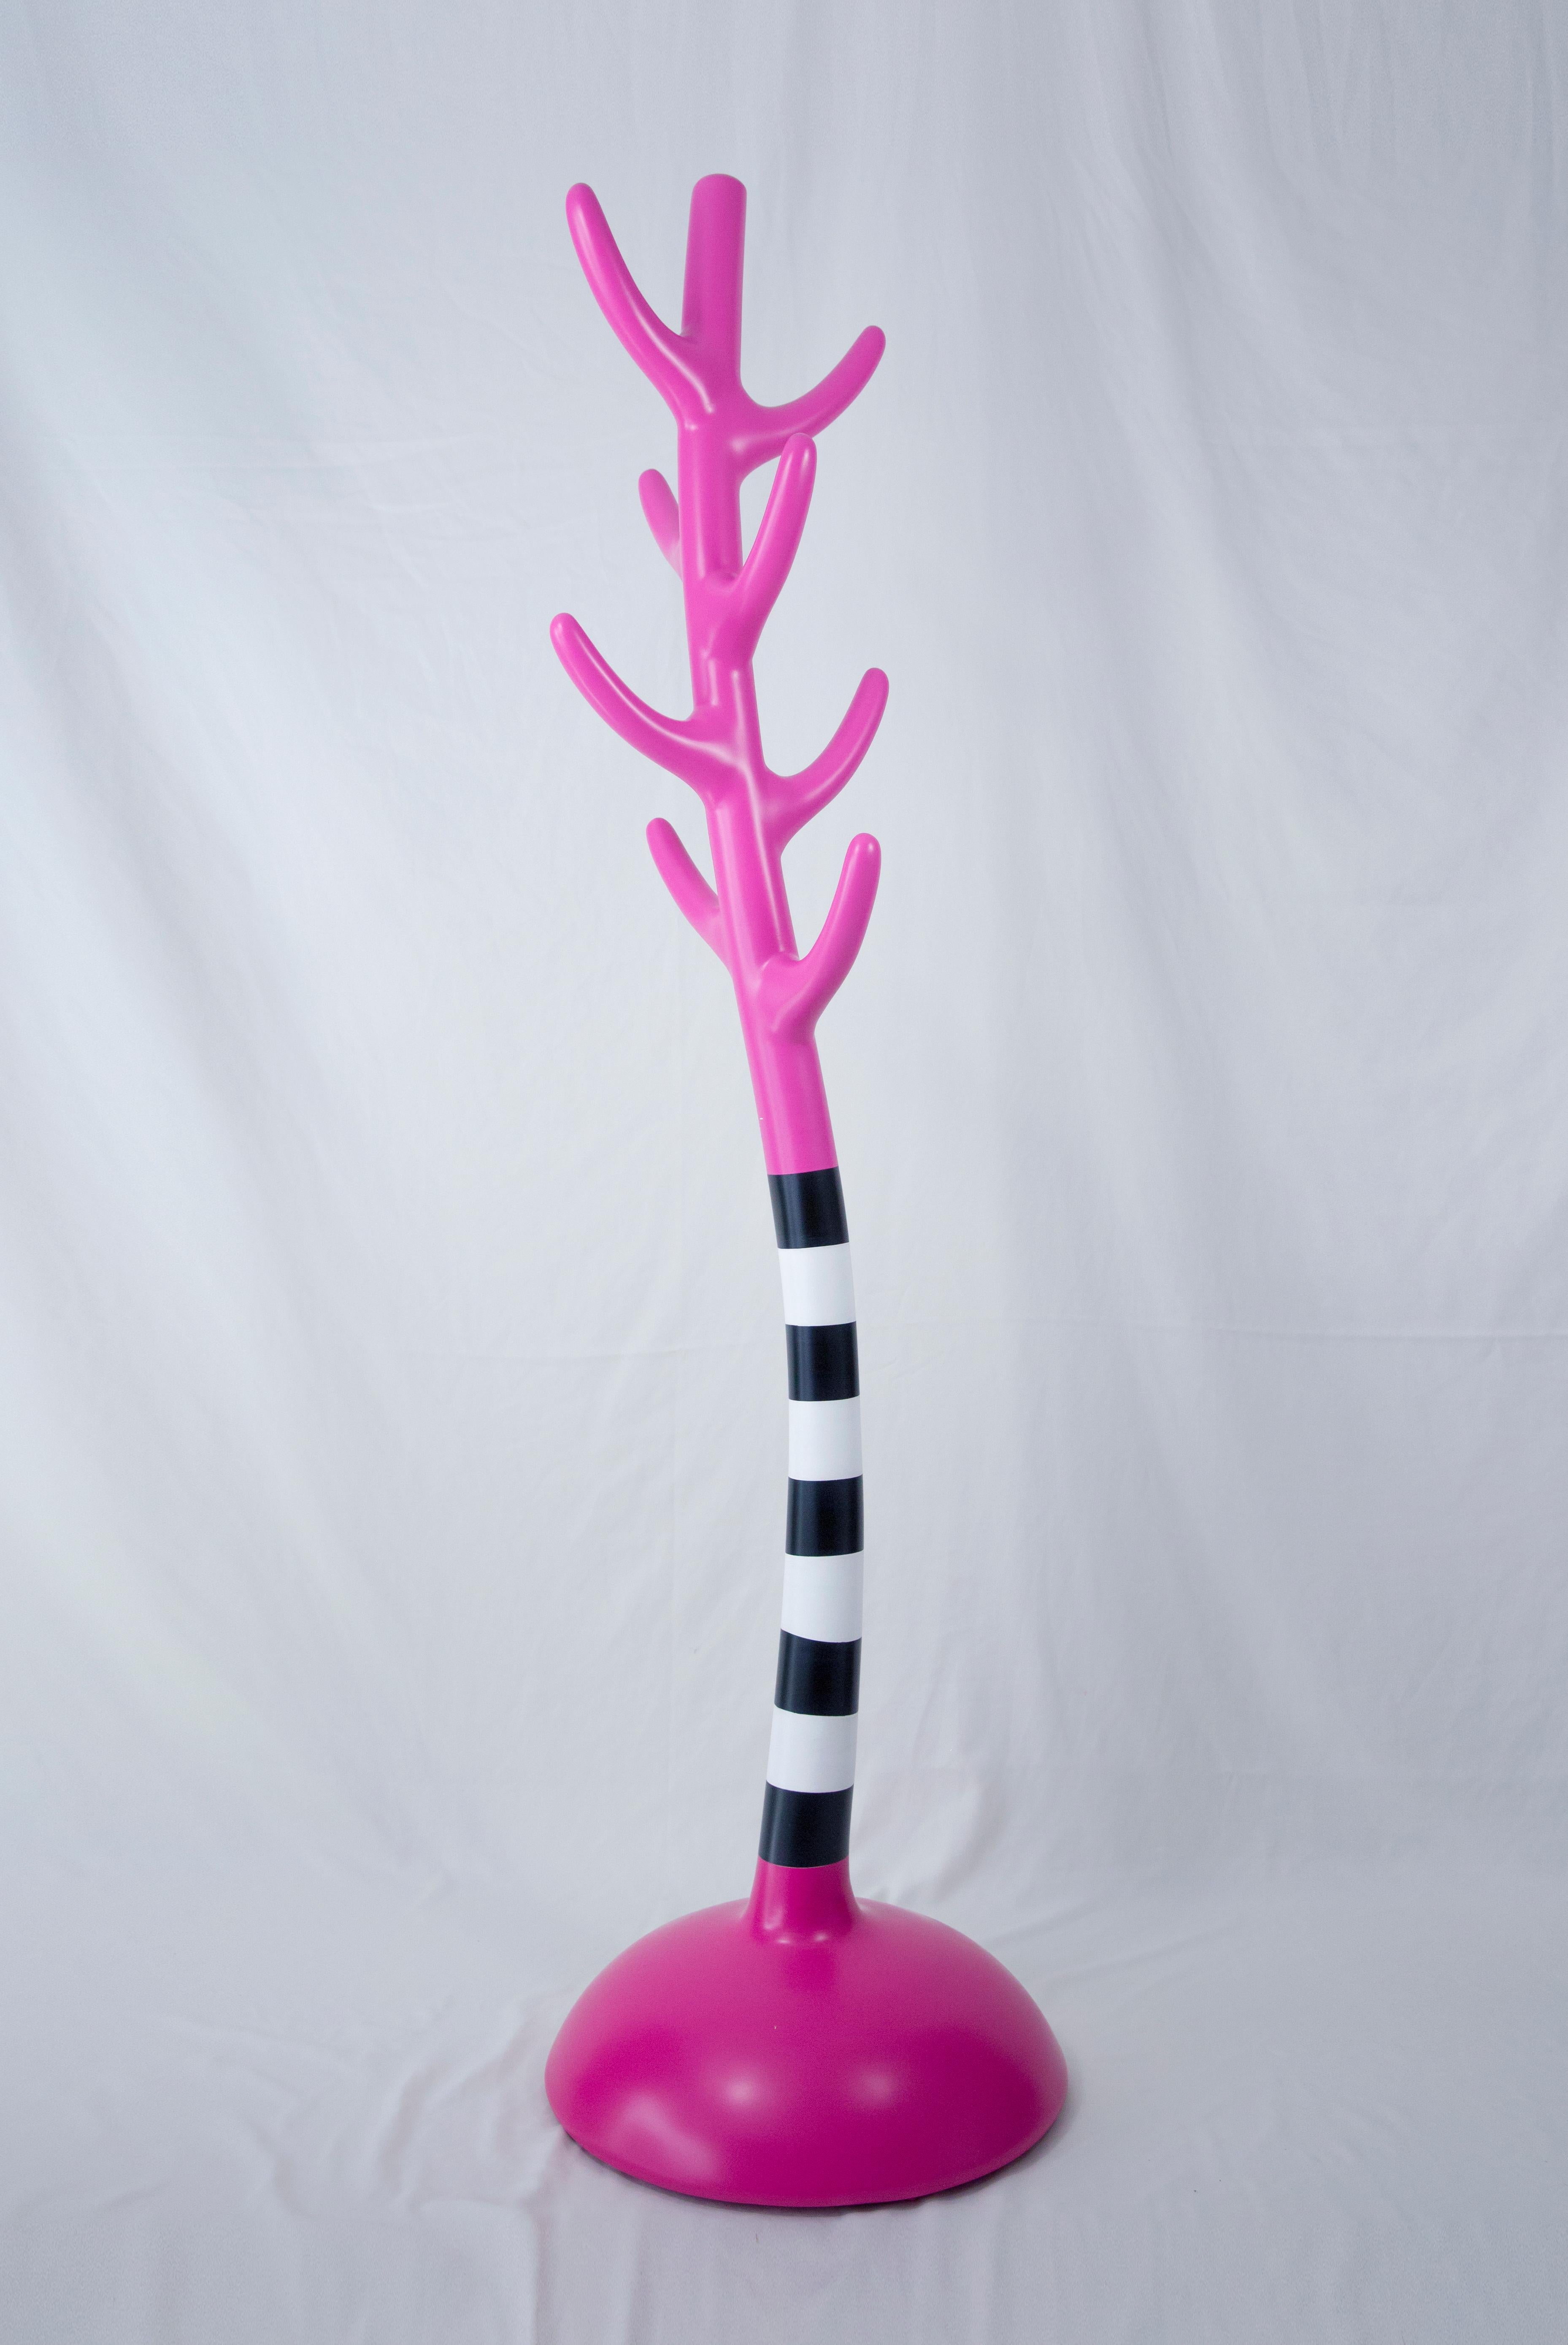 Cast Crooked Coat Rack: Vibrant Pink Sculptural Artistic Hanger For Sale